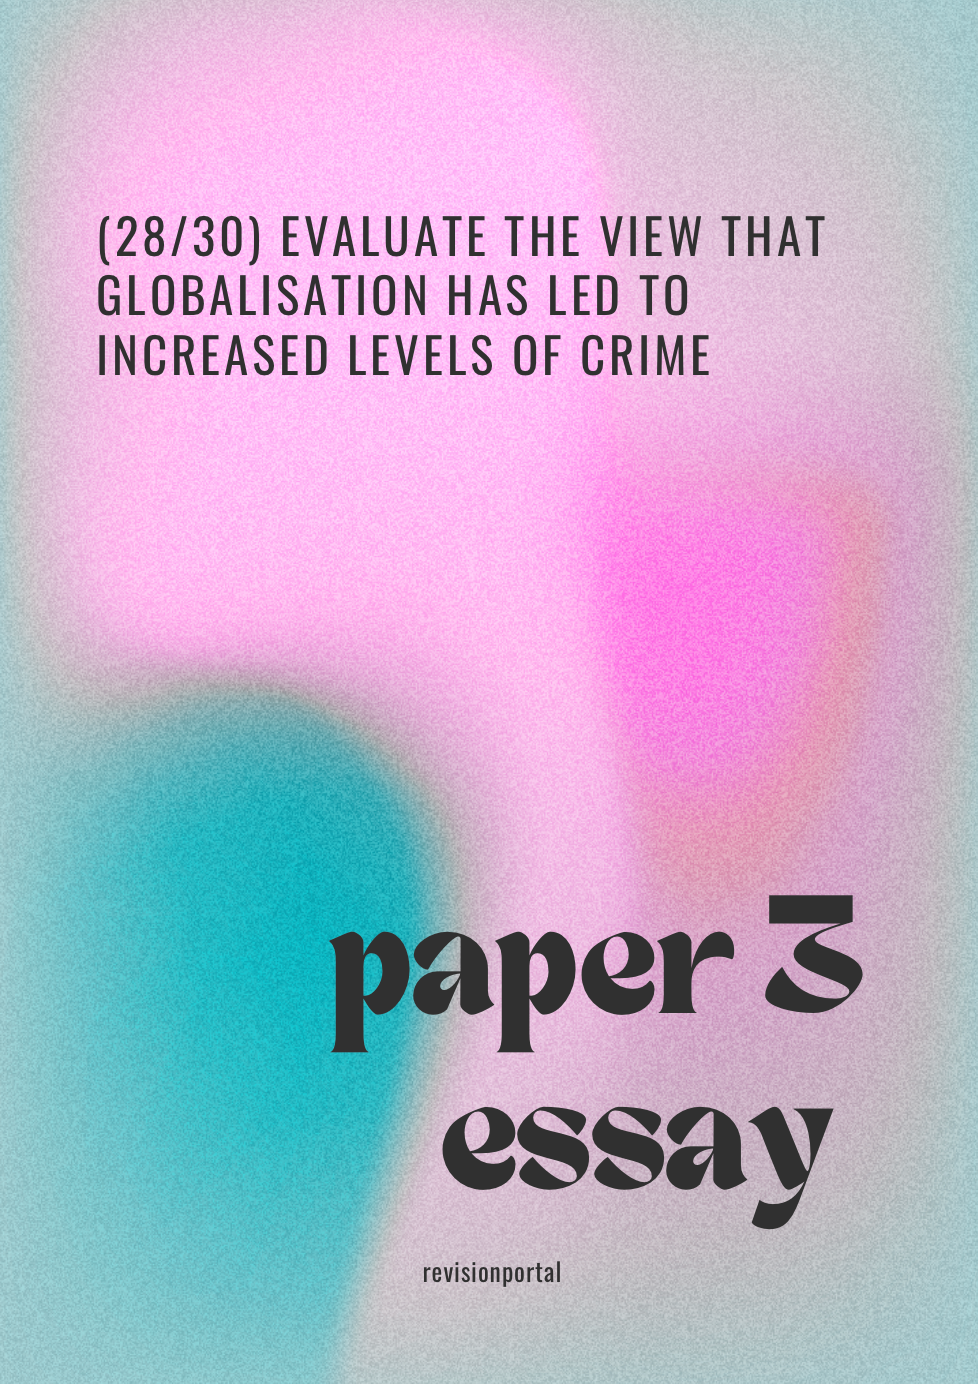 A* sociology essay (28/30)